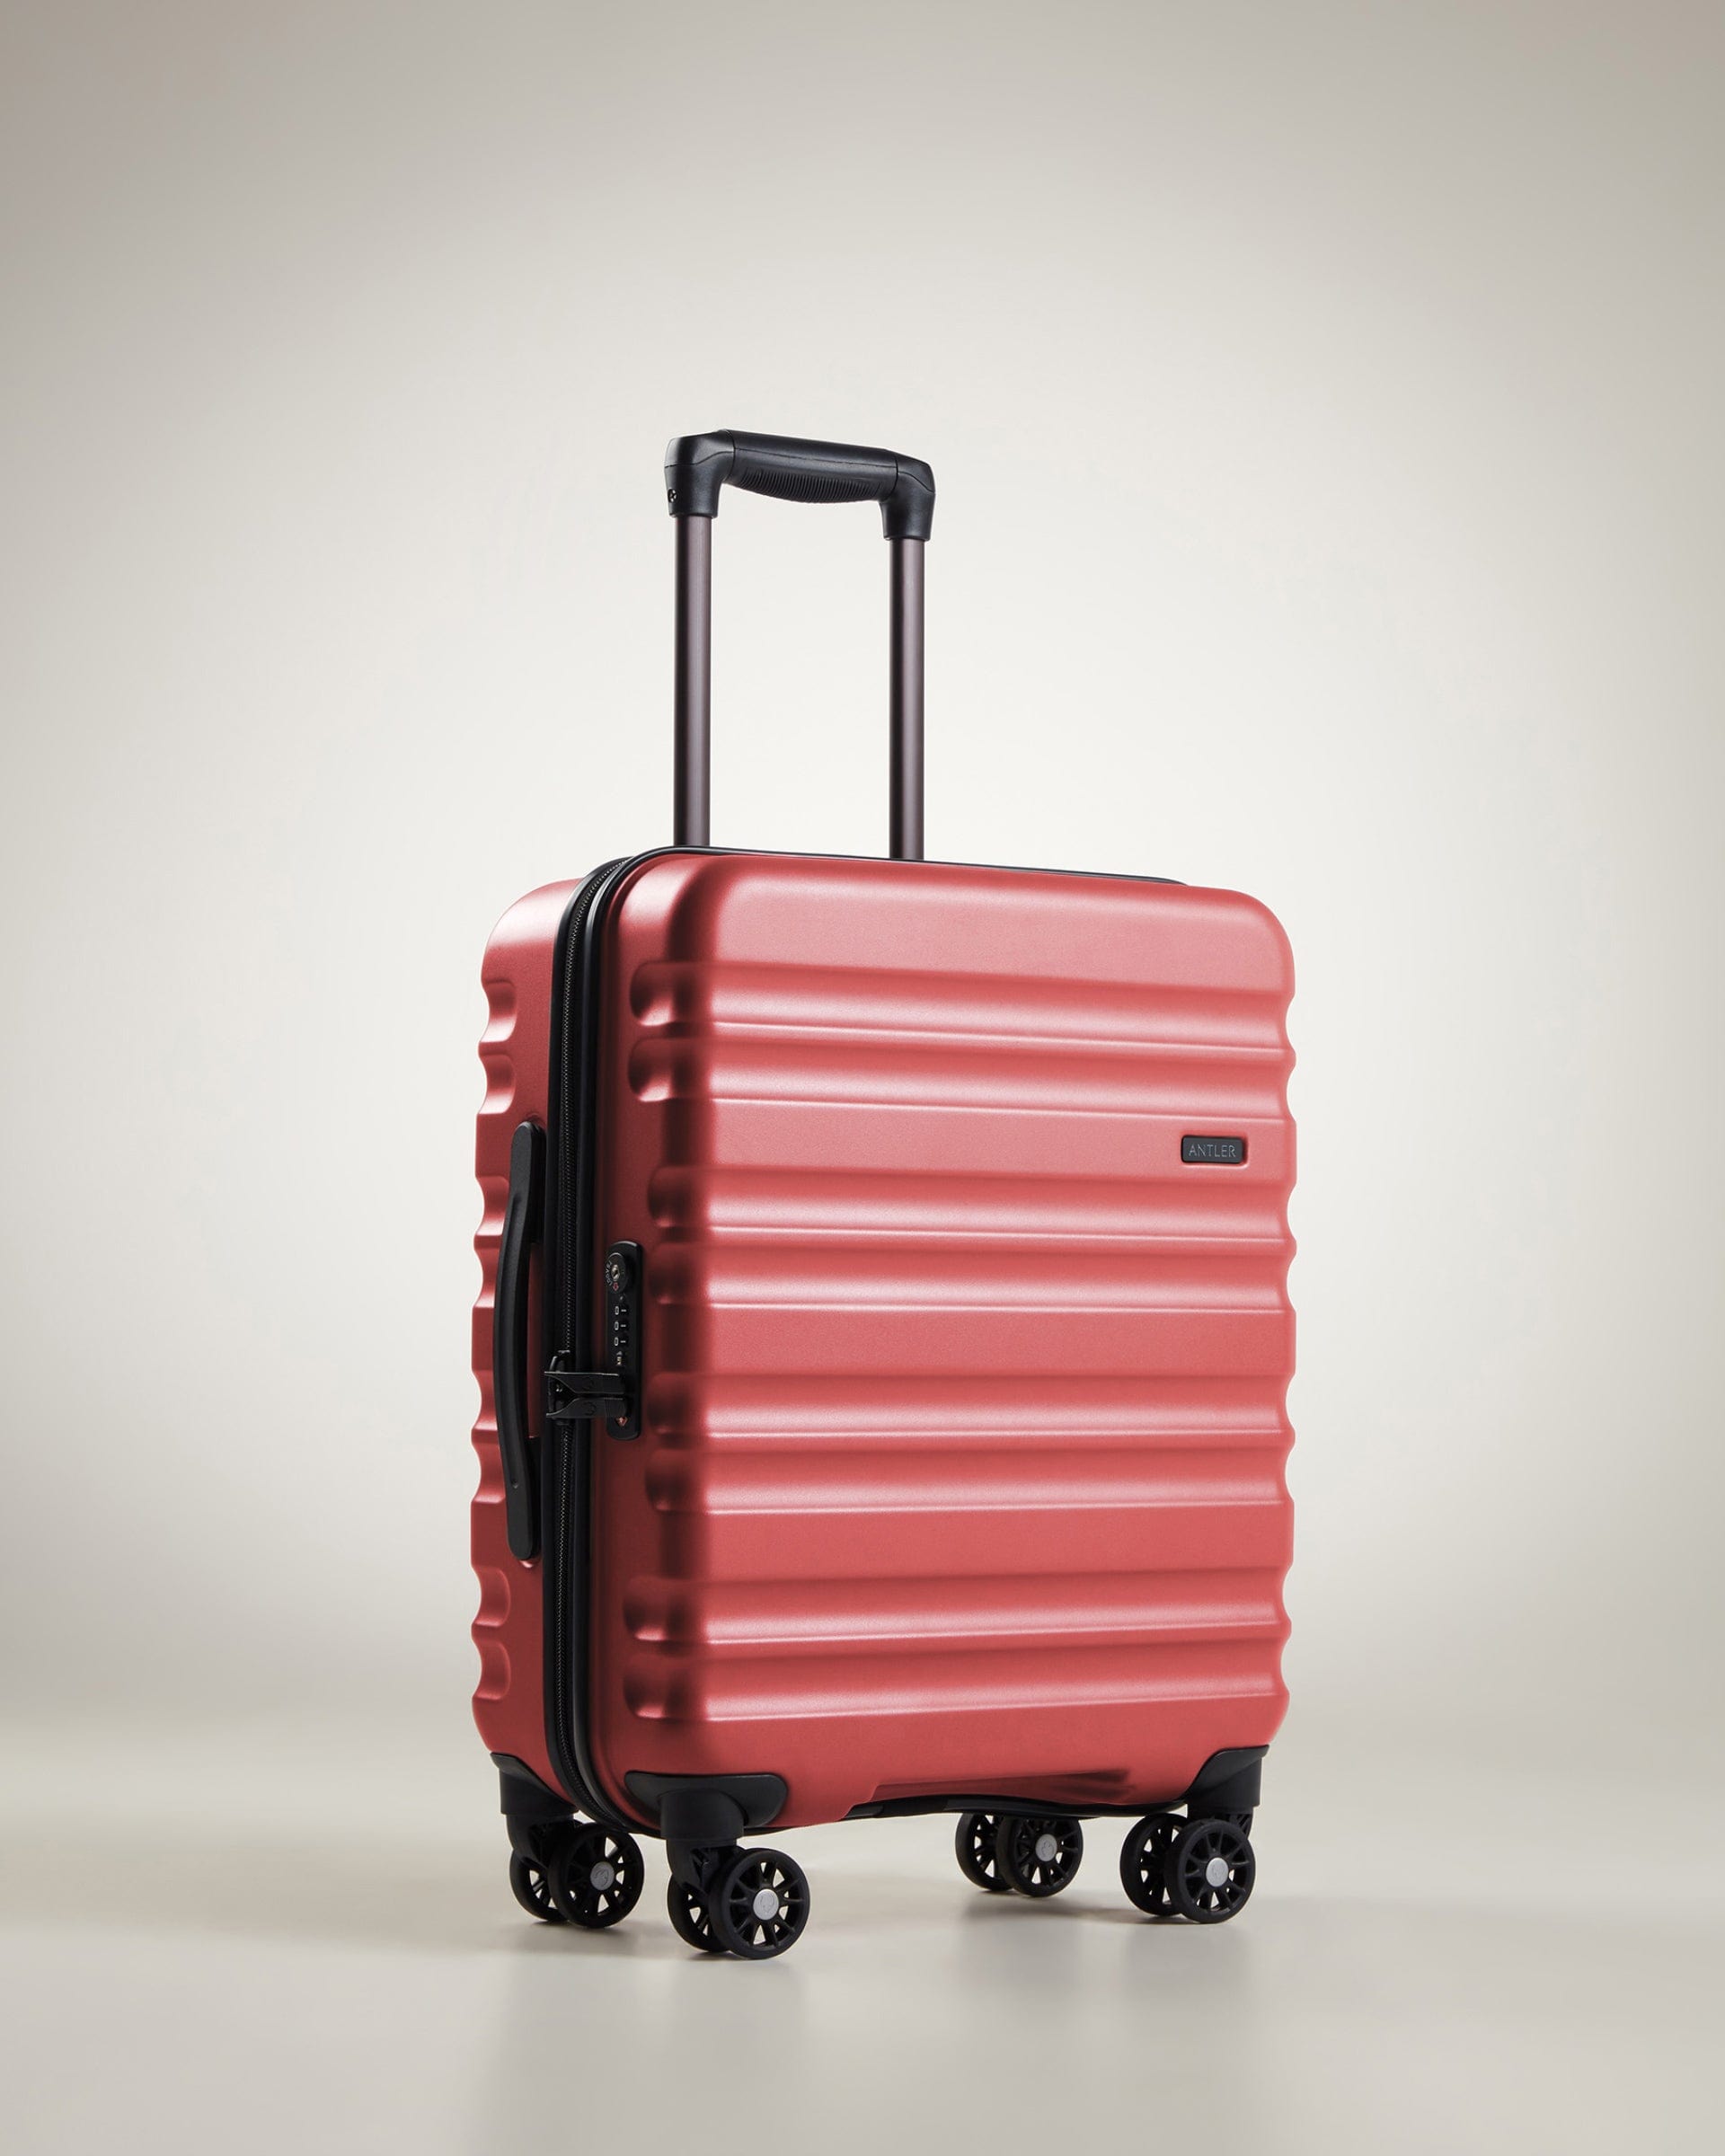 Antler Luggage -  Clifton cabin in coral - Hard Suitcases Clifton Cabin Suitcase Coral (Red) | Hard Suitcase | Antler UK